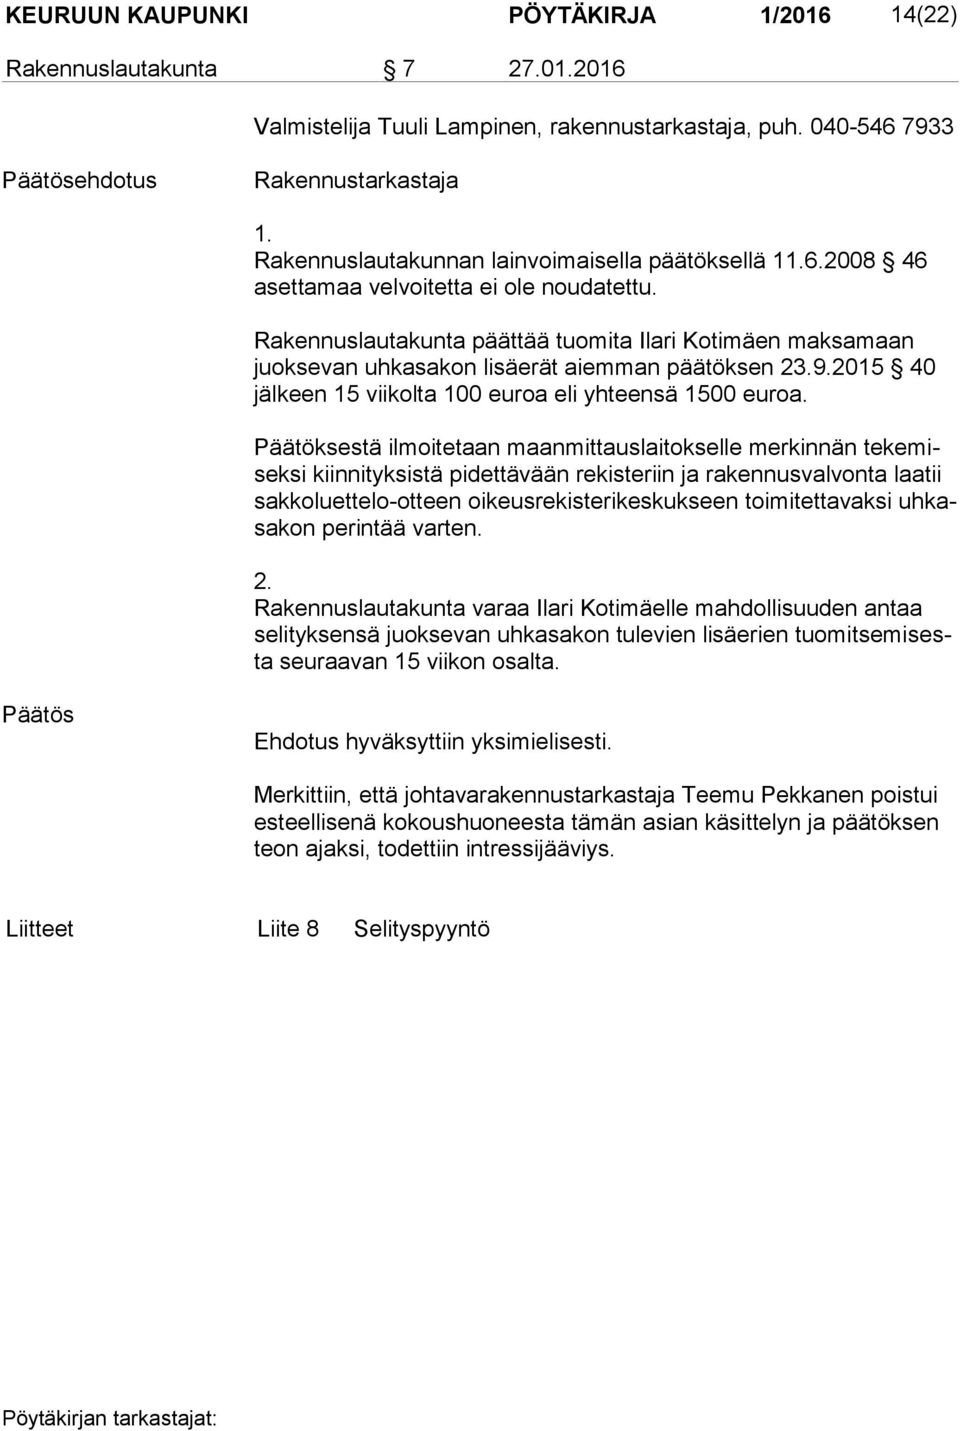 Rakennuslautakunta päättää tuomita Ilari Kotimäen maksamaan juok se van uhkasakon lisäerät aiemman päätöksen 23.9.2015 40 jäl keen 15 viikolta 100 euroa eli yhteensä 1500 euroa.